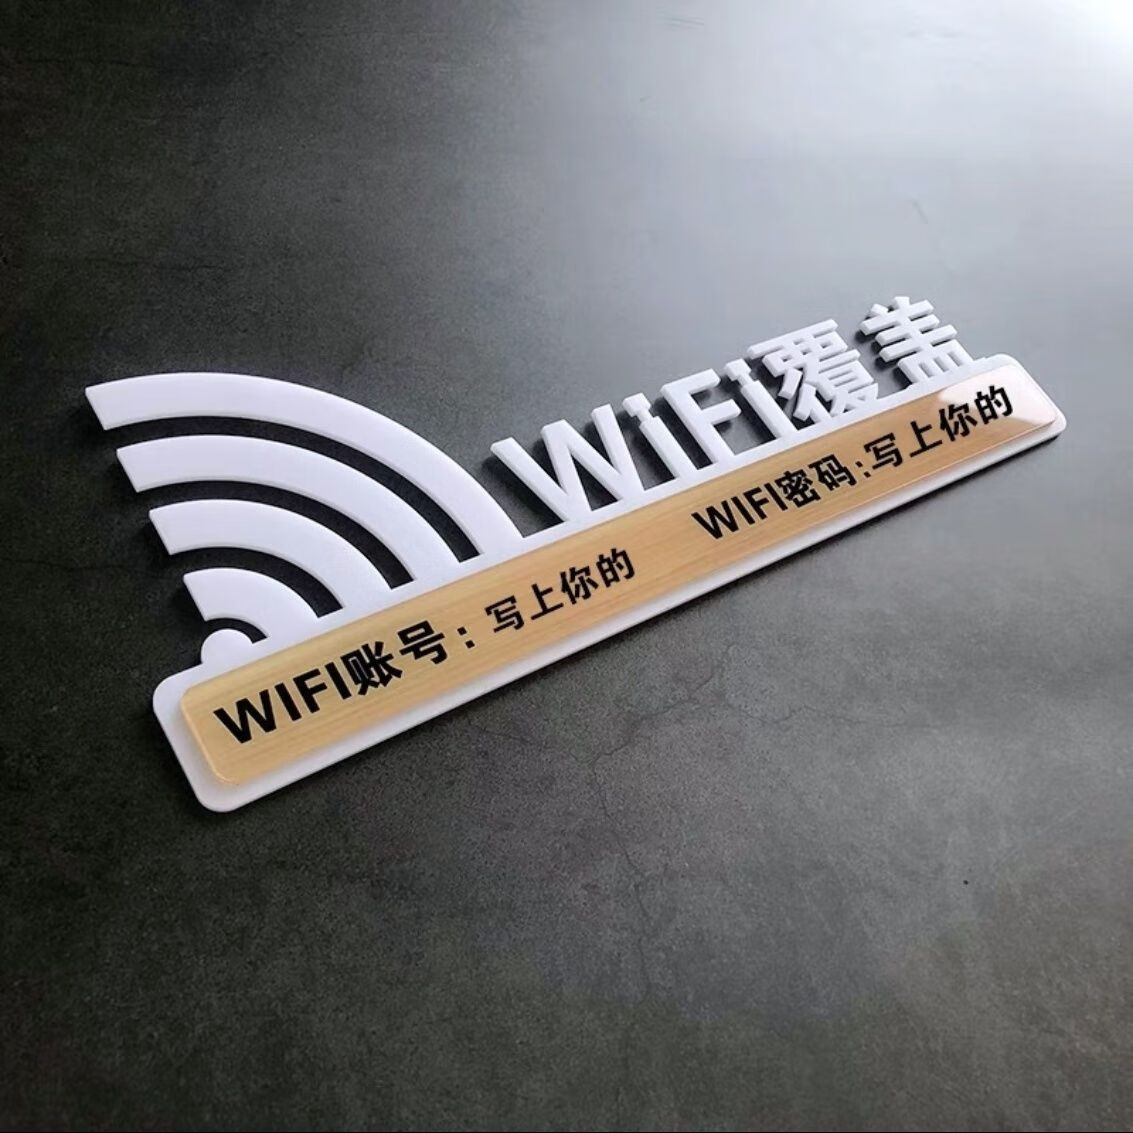 映棠wifi密码告示桌牌无线网络亚克力wifi提示牌墙贴WIFI已覆盖标志牌 11.5x30厘米 【大气尺寸 白色wifi提示牌